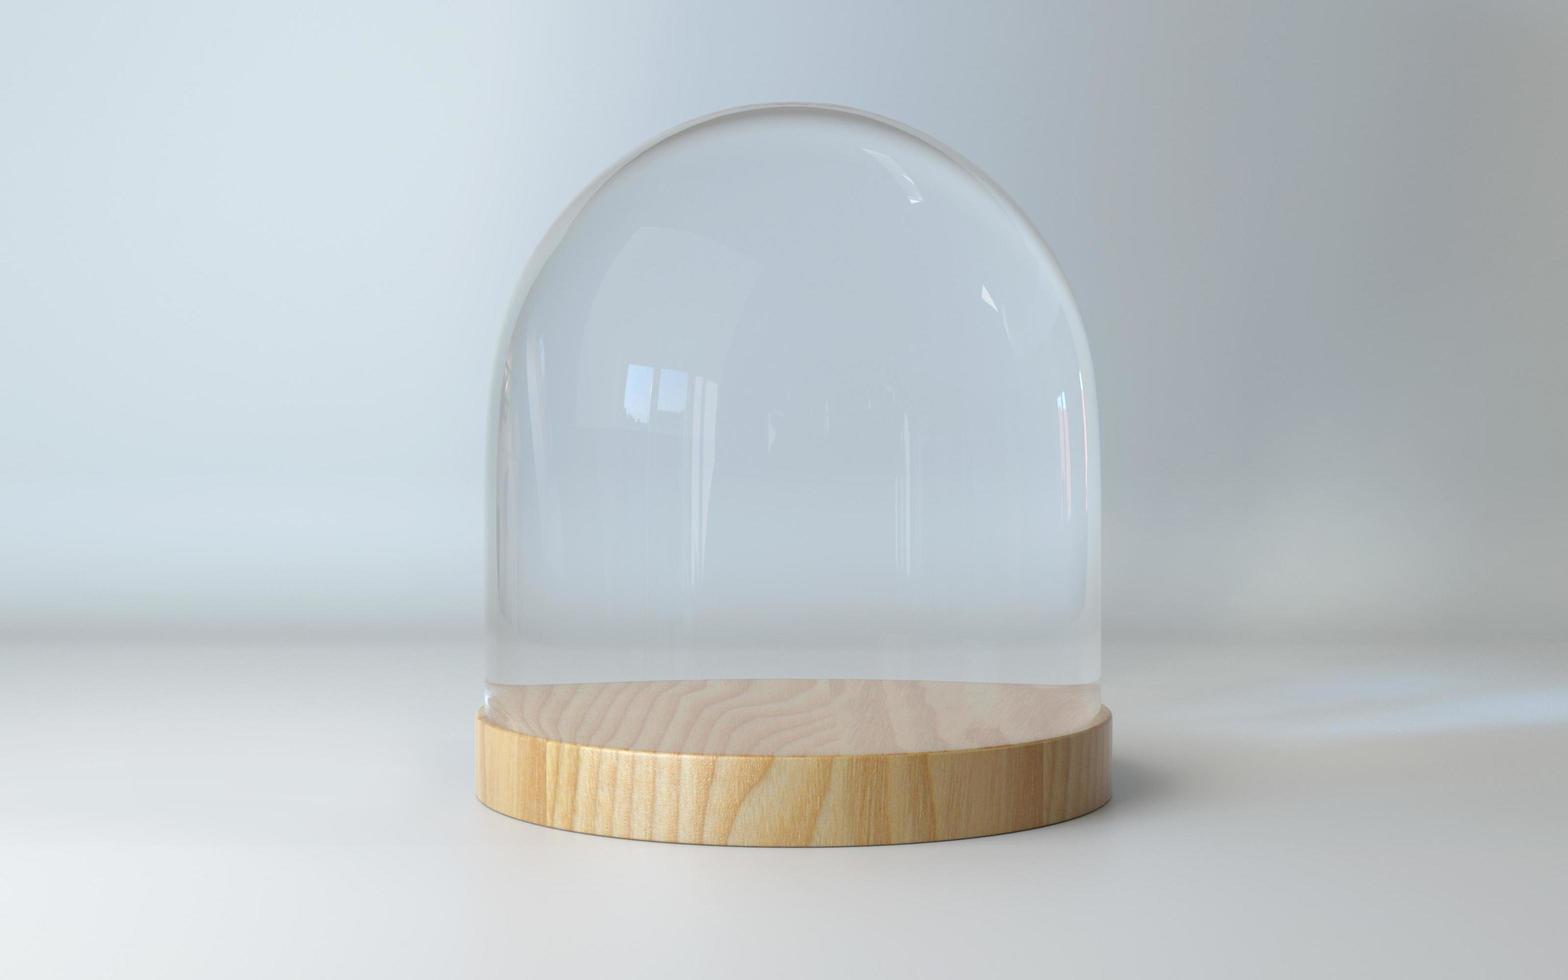 glazen koepel met houten dienblad 3D-rendering foto